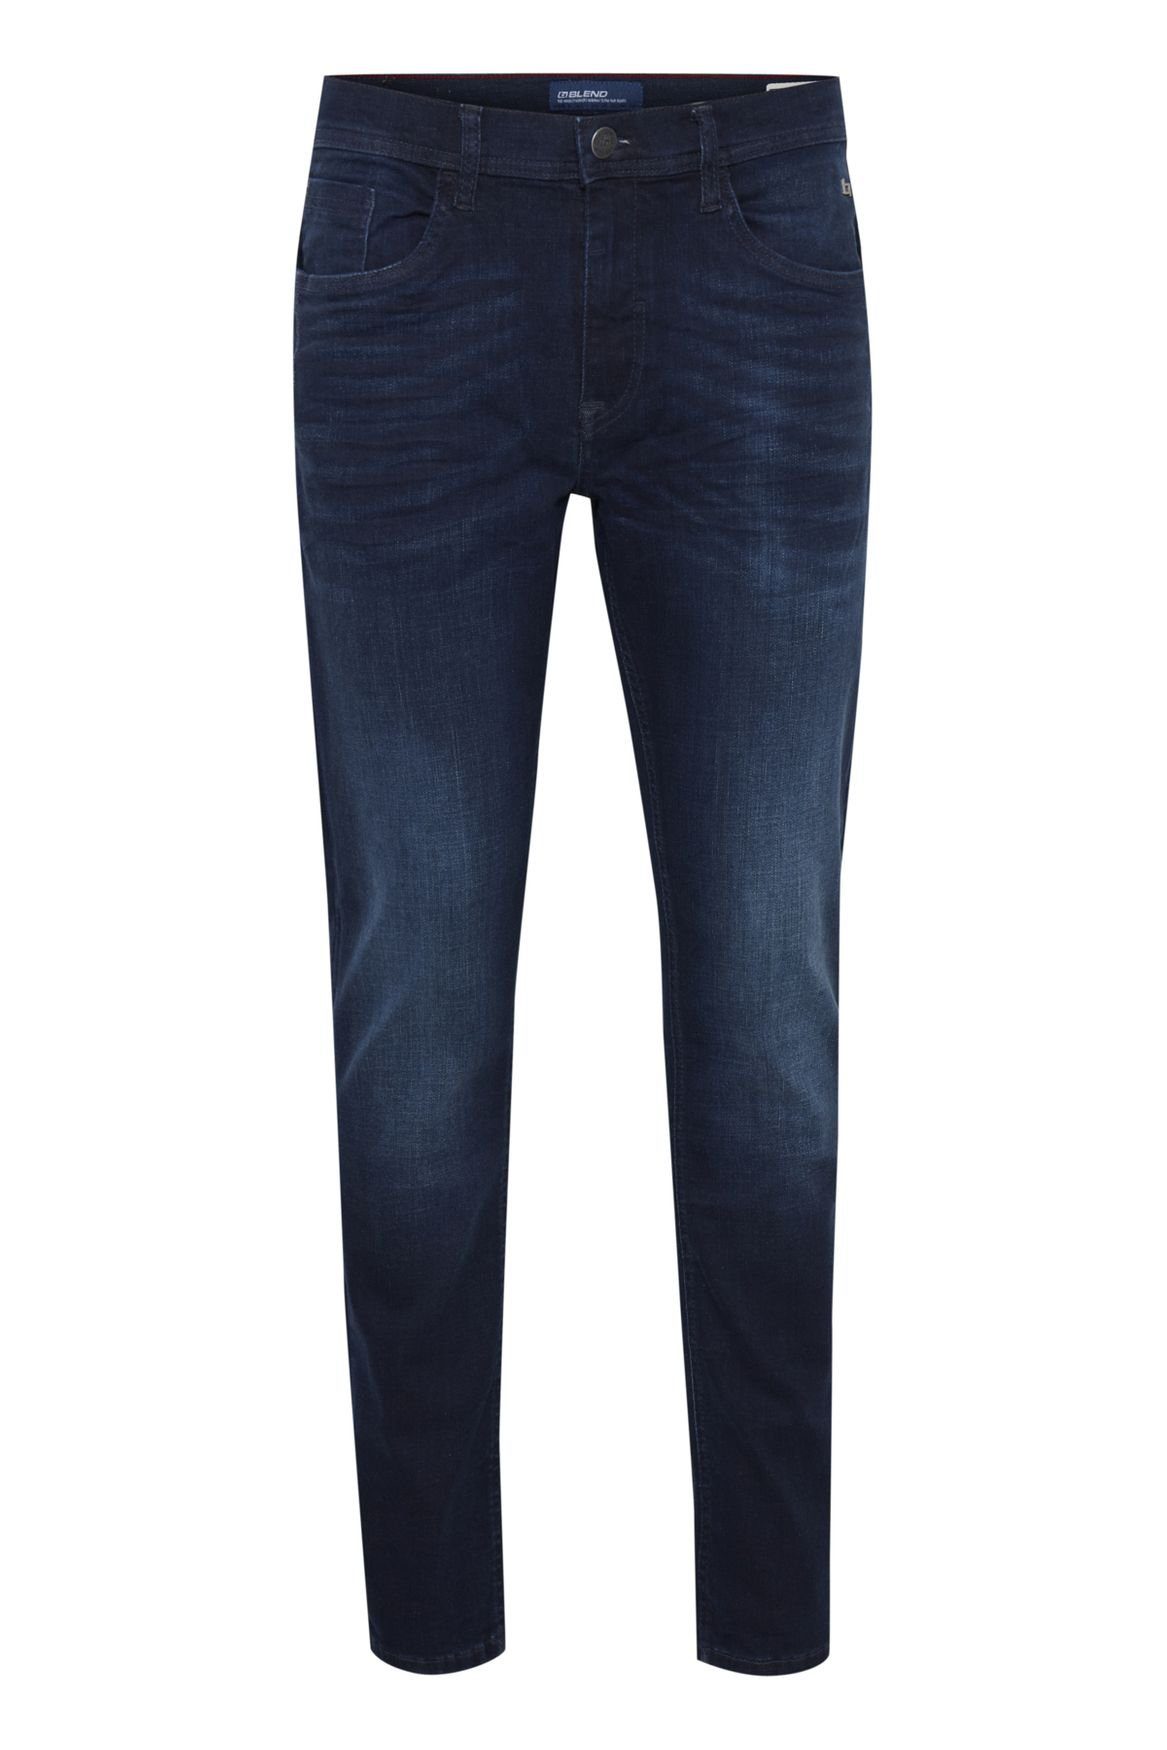 Blend Slim-fit-Jeans Slim Fit Jeans Basic Denim Hose Stoned Washed TWISTER FIT 5196 in Dunkelblau | 